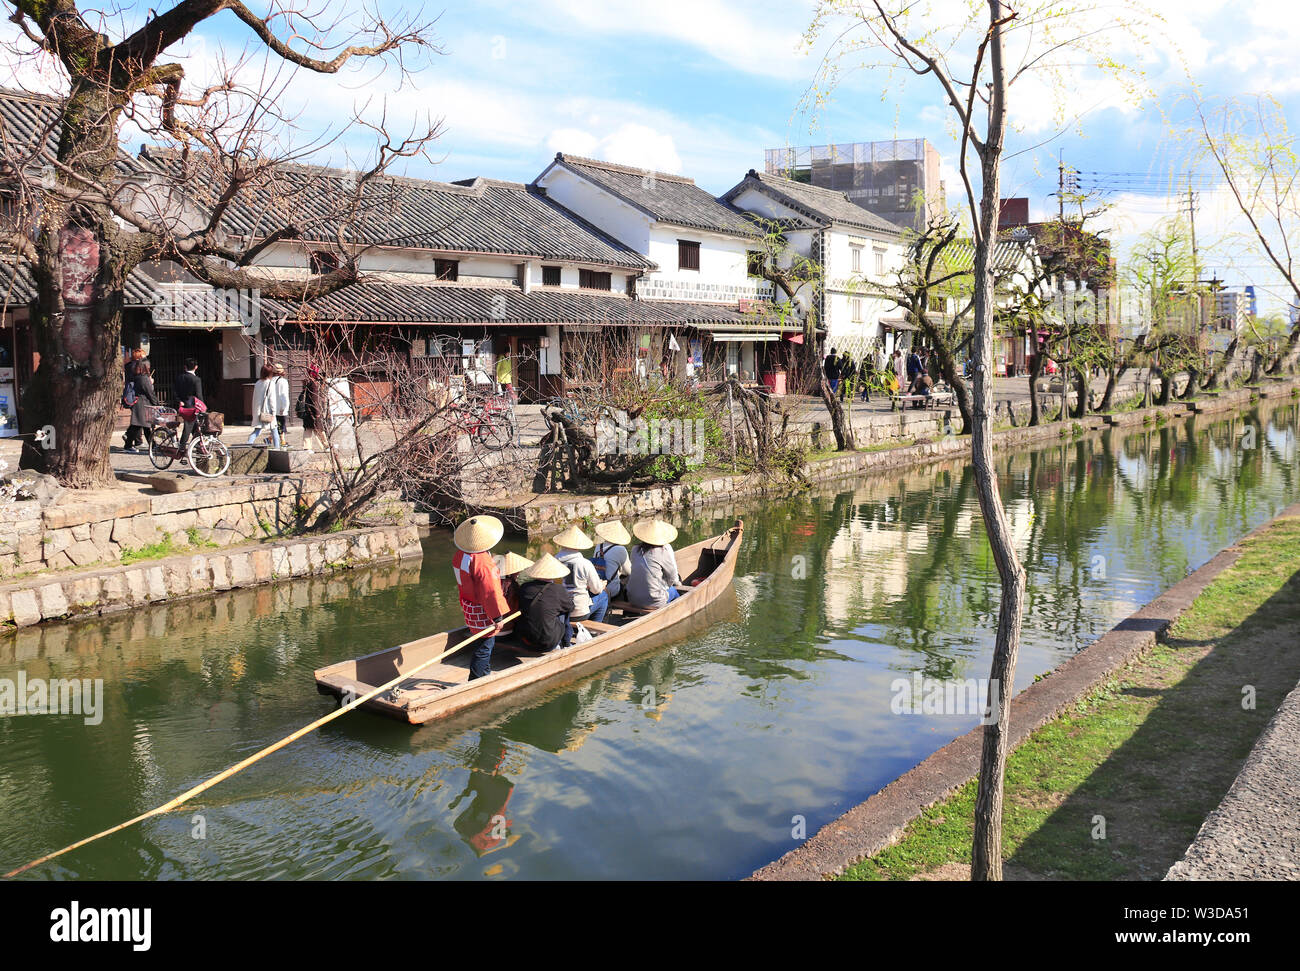 Les gens en bateau à l'ancienne, Kurashiki Bikan, quartier du canal dans la ville de Kurashiki, Japon Banque D'Images